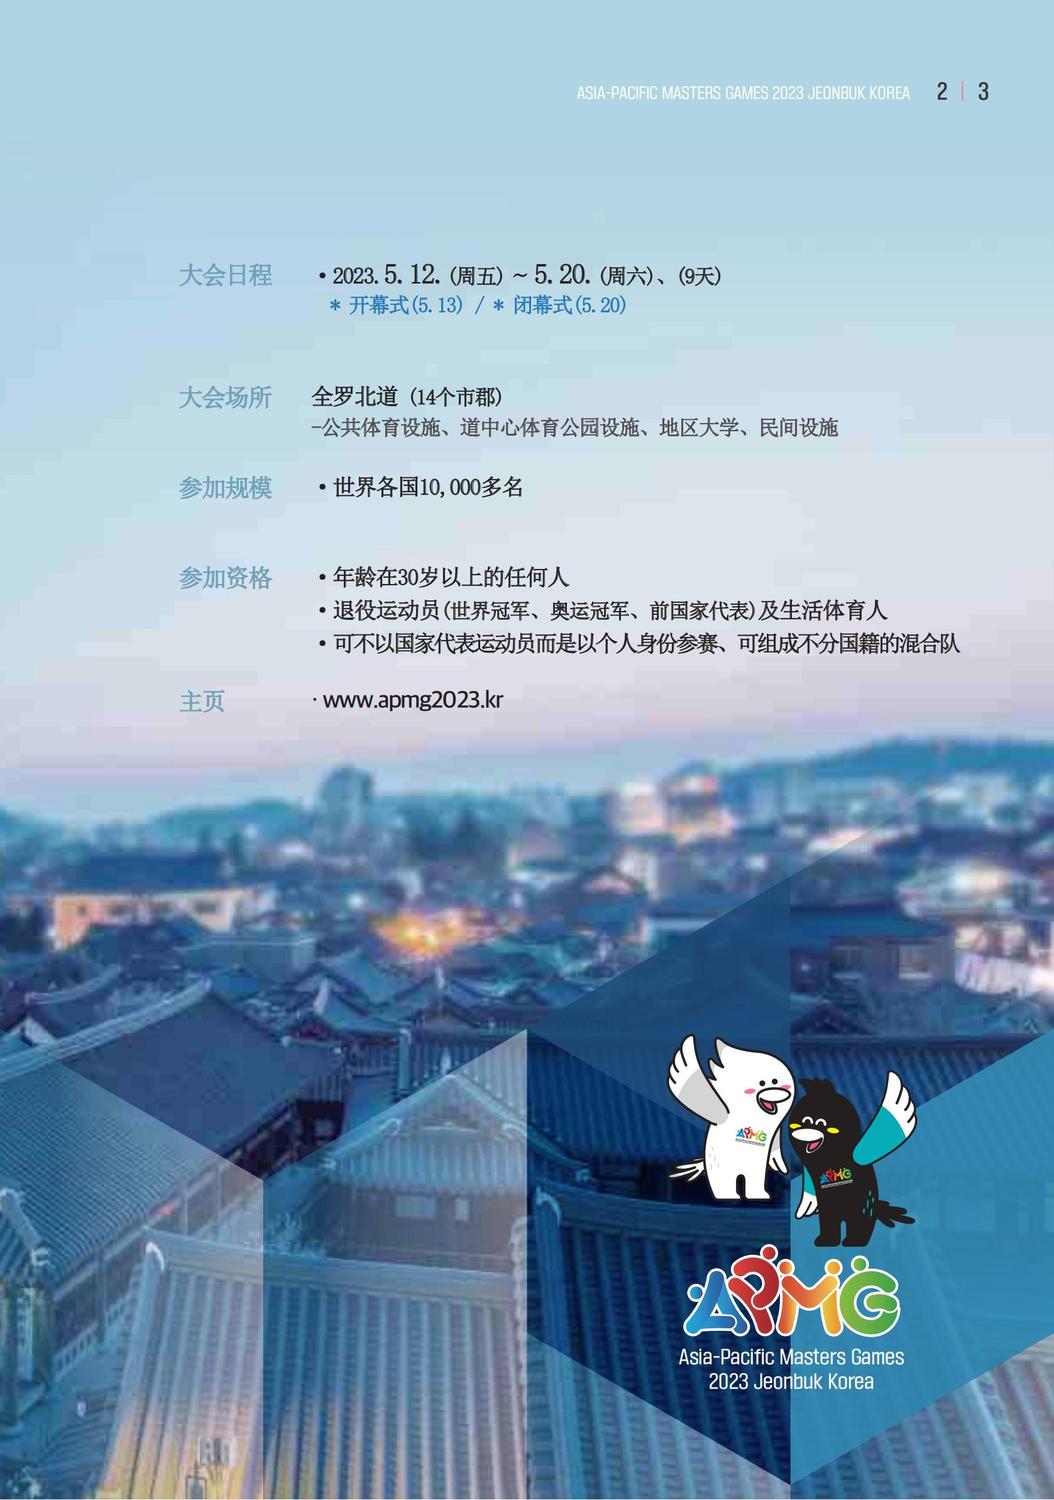 亚太大师赛中文宣传册_压缩版_02.jpg